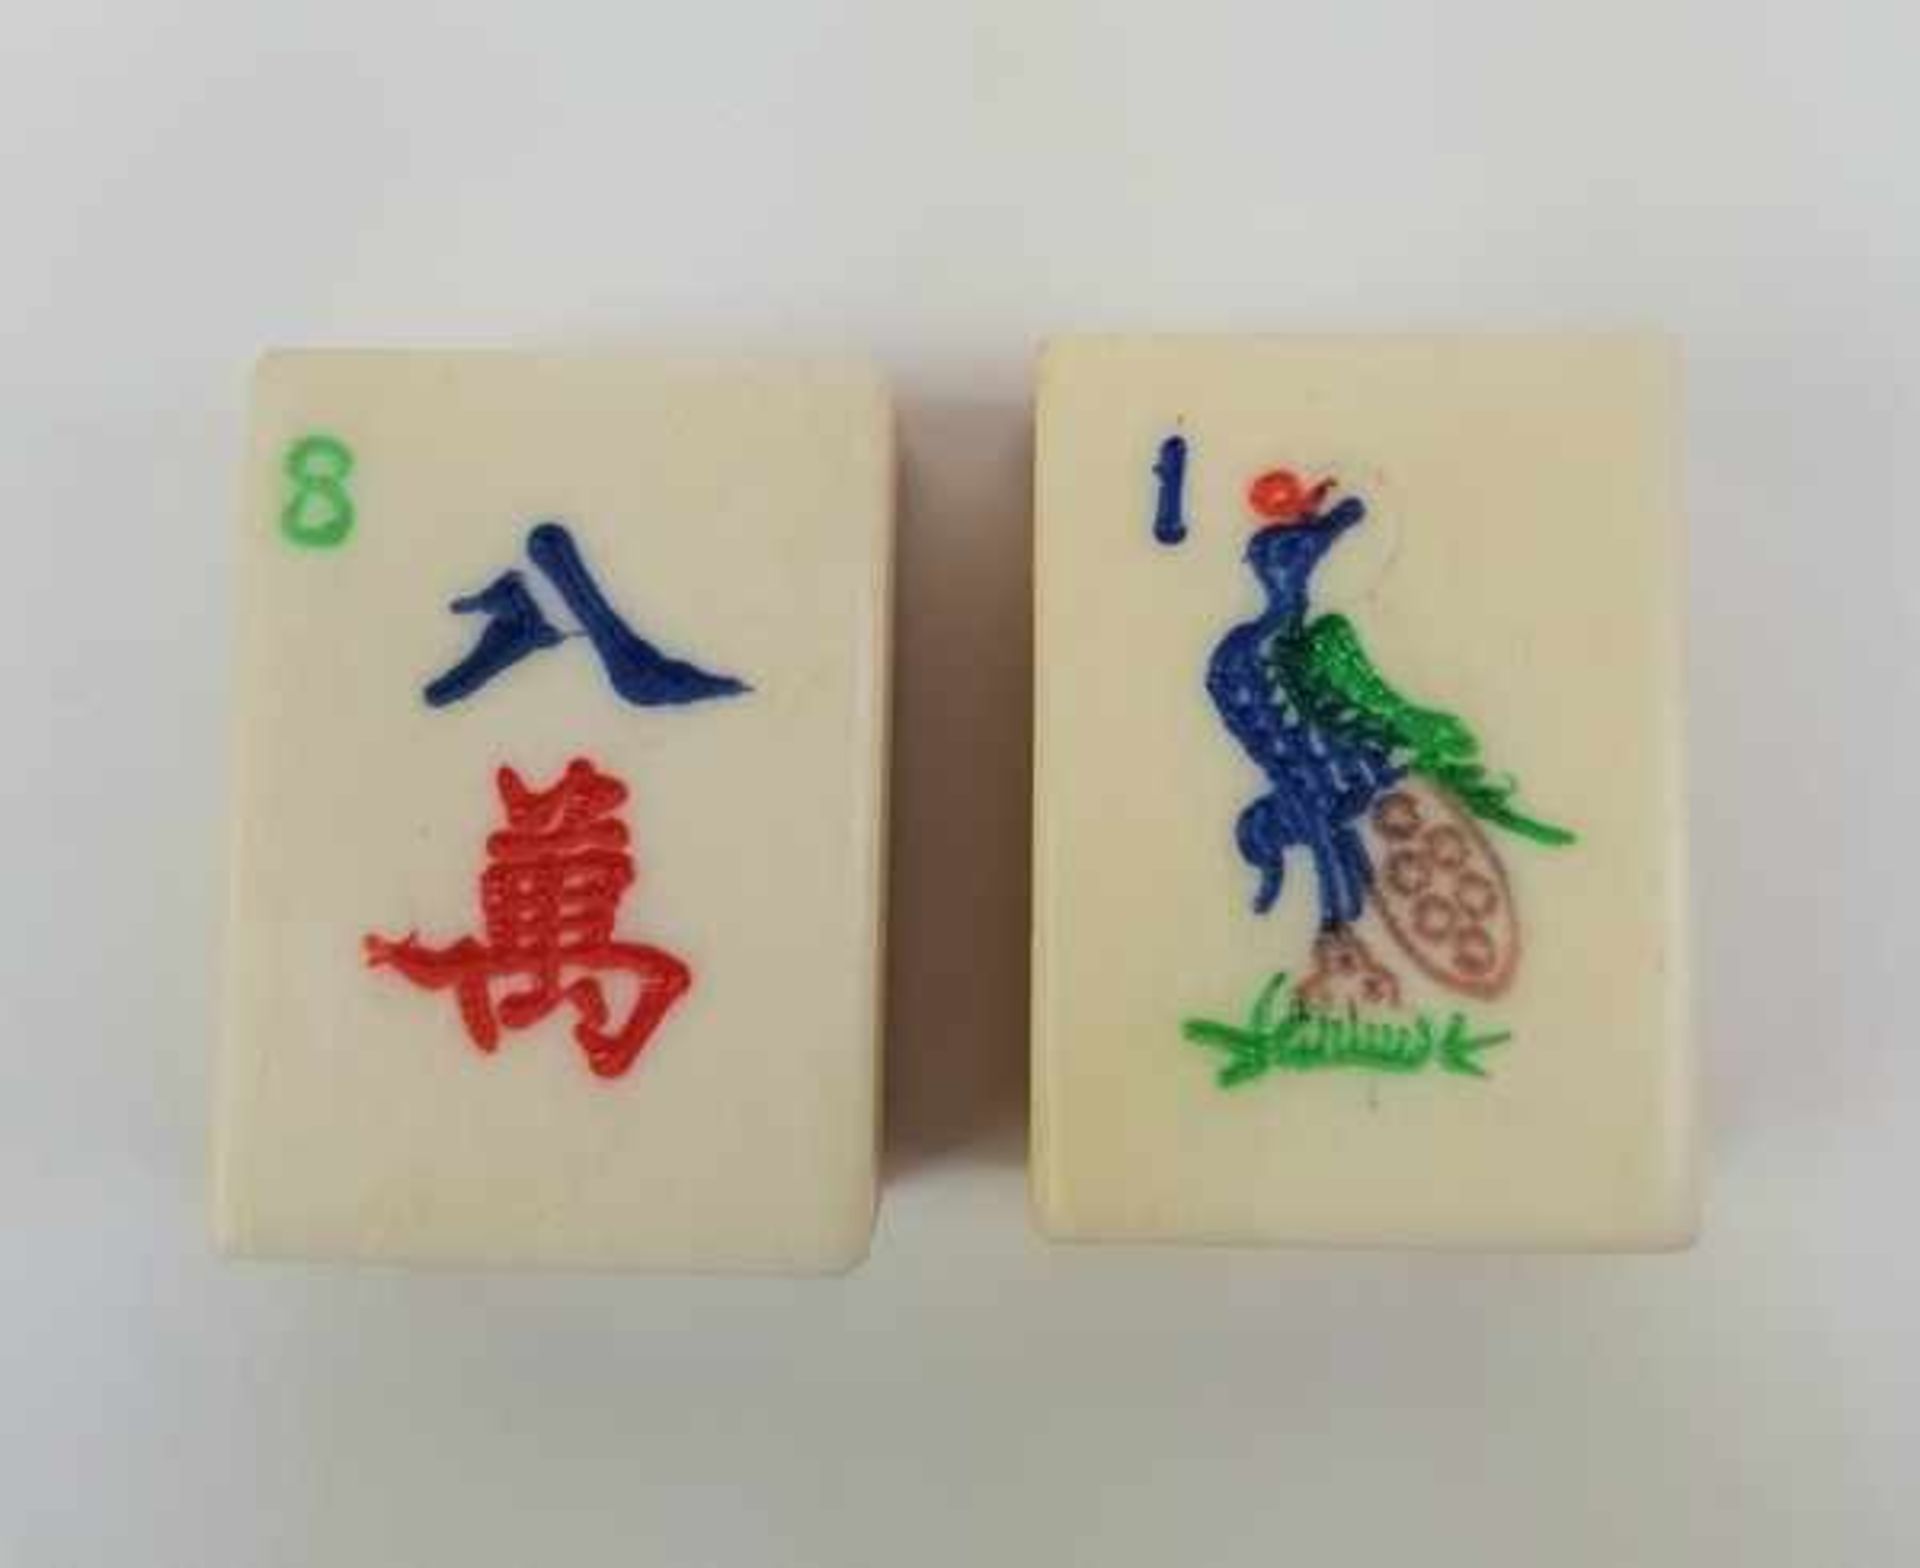 (Aziatica) Mah jongMah jong gezelschapsspel in orginele doos, bamboe stenen en benen rekenstokjes. - Bild 3 aus 6